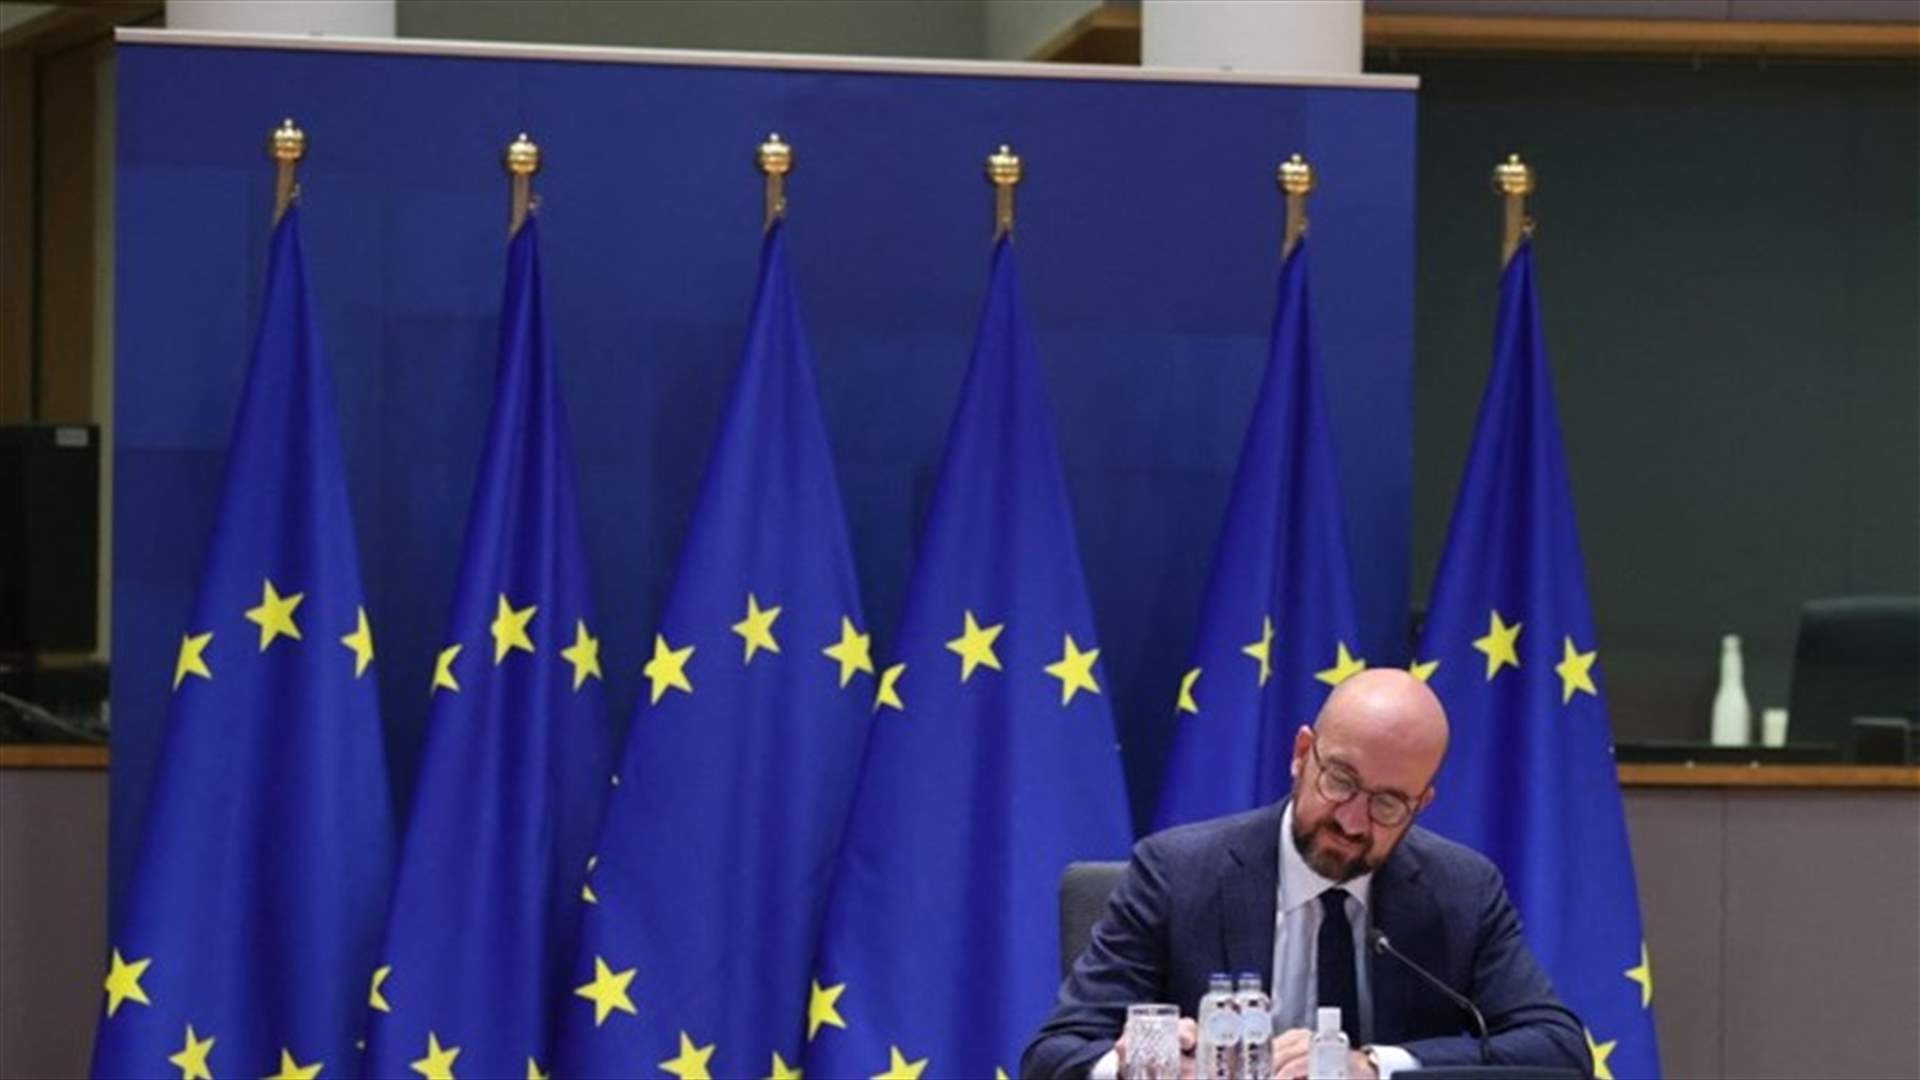 البرلمان الأوروبي يدعو إلى إعادة صياغة معاهدات الاتحاد الأوروبي عقب مؤتمر حول مستقبل القارة